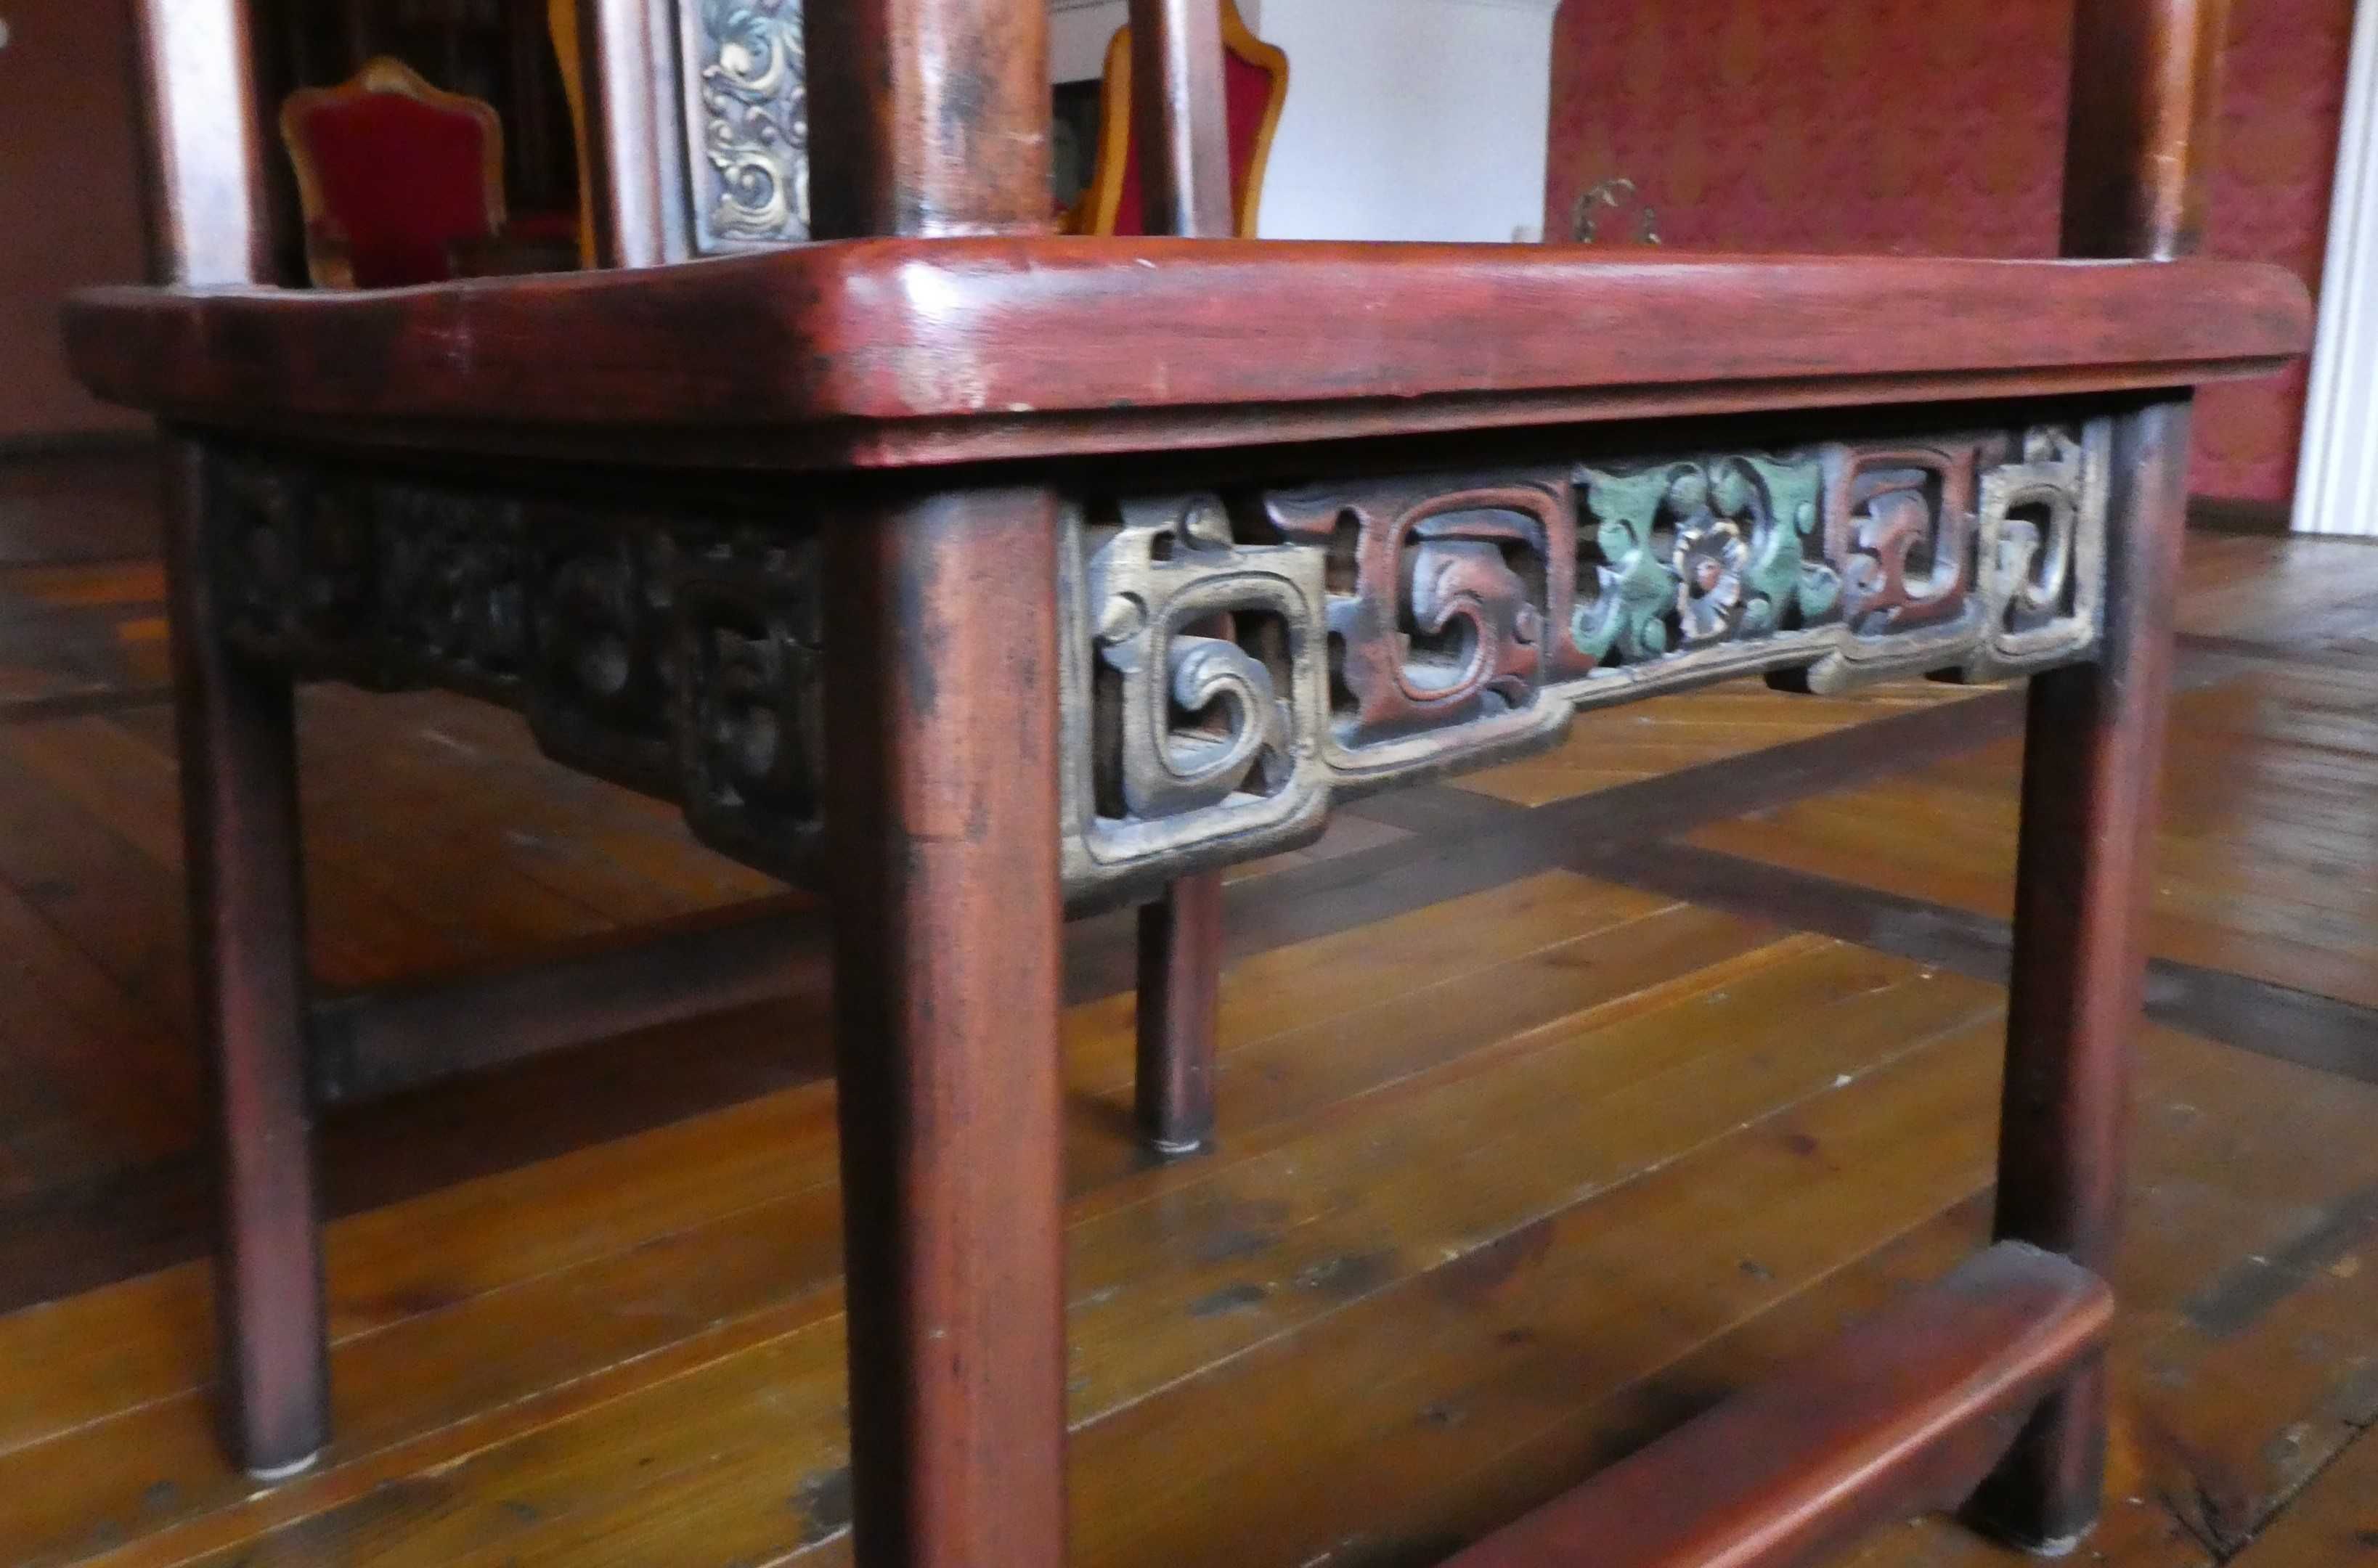 4 fotele drewniane orientalne